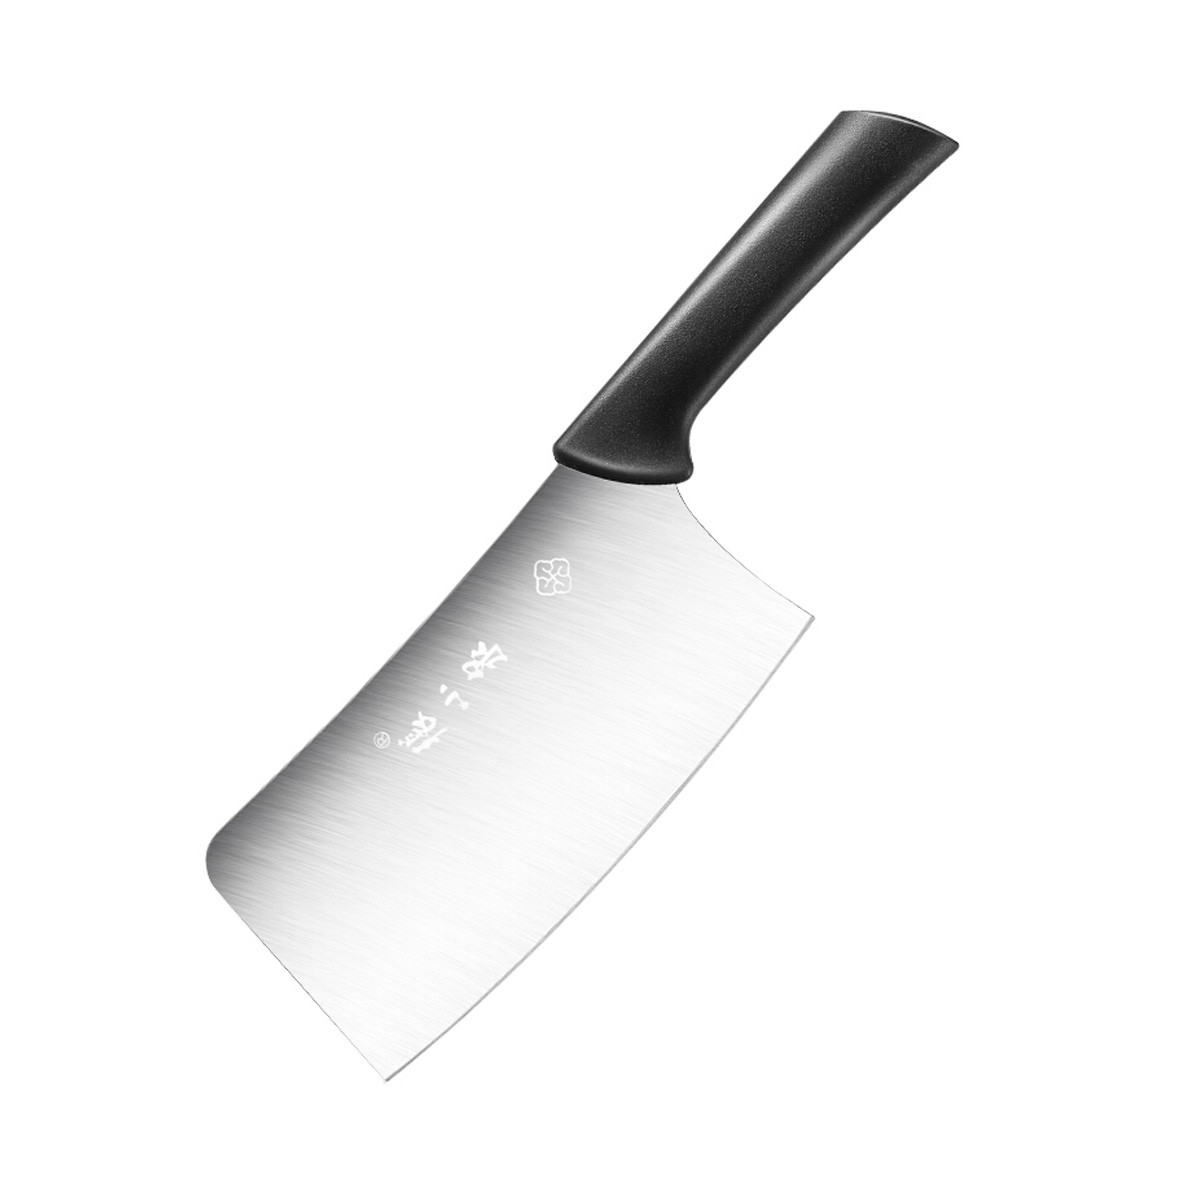 家用菜刀切菜切片刀组合全套装价格质量 哪个牌子比较